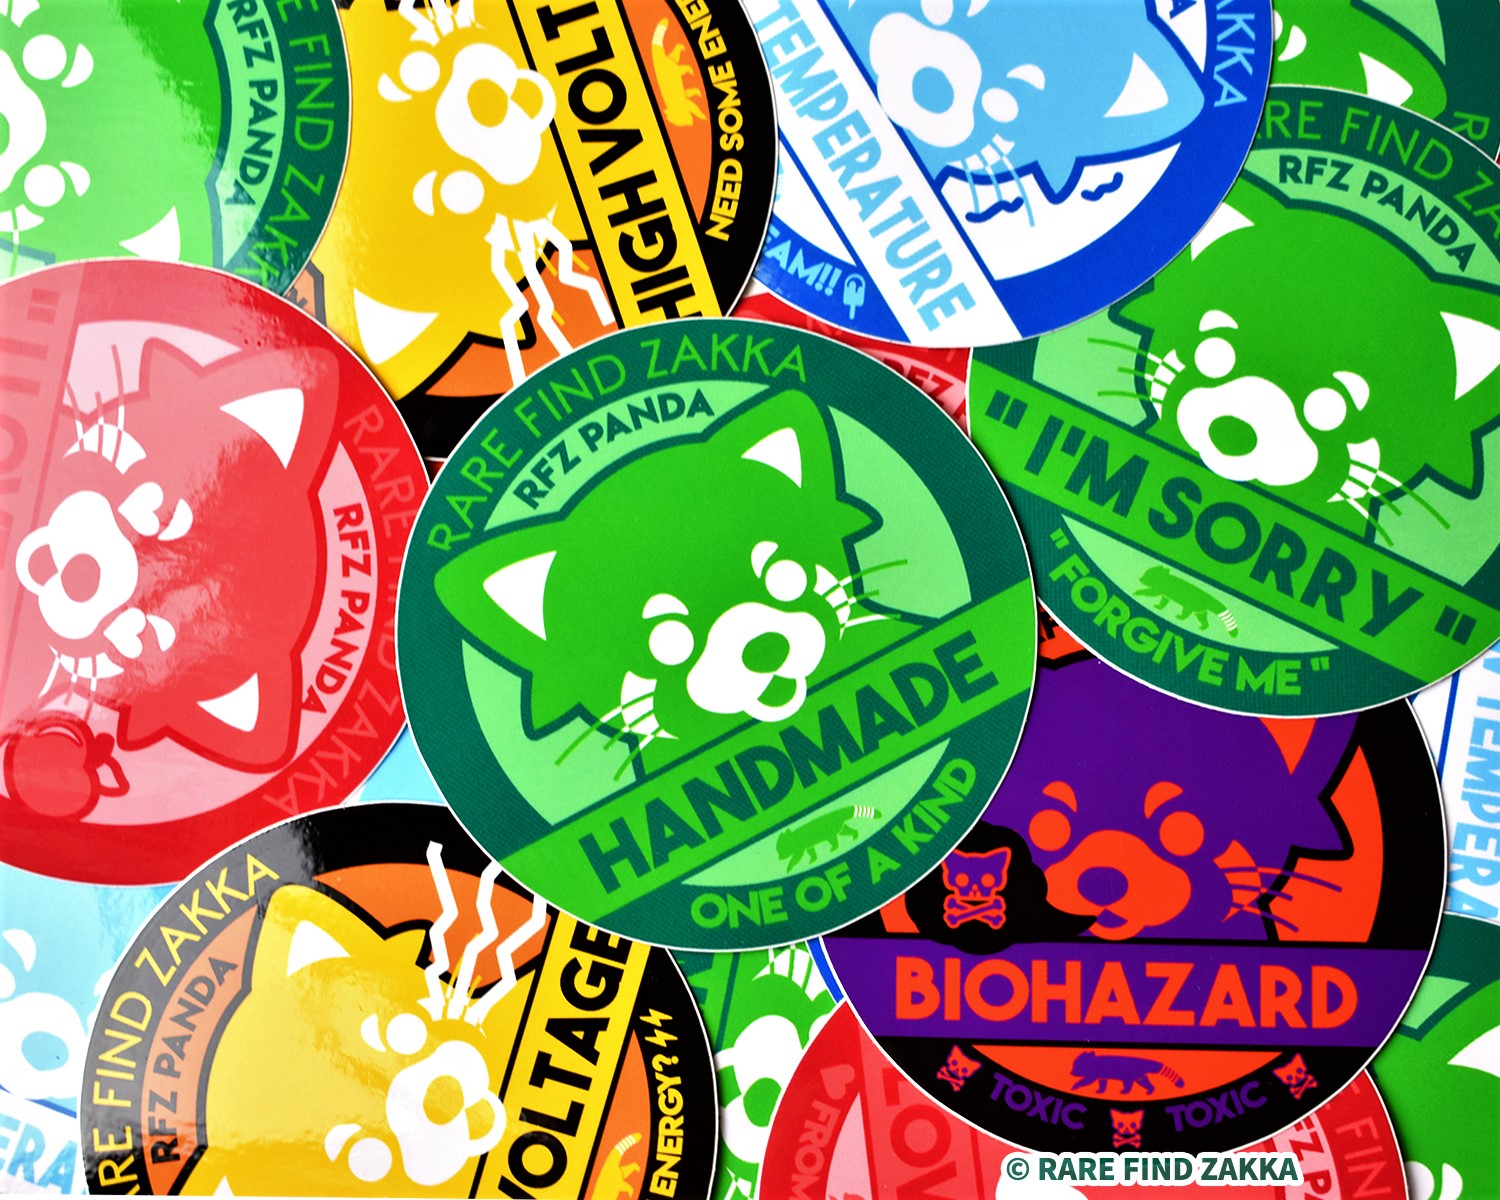 RFZ ORIGINALS Sticker Collection "BIOHAZARD"